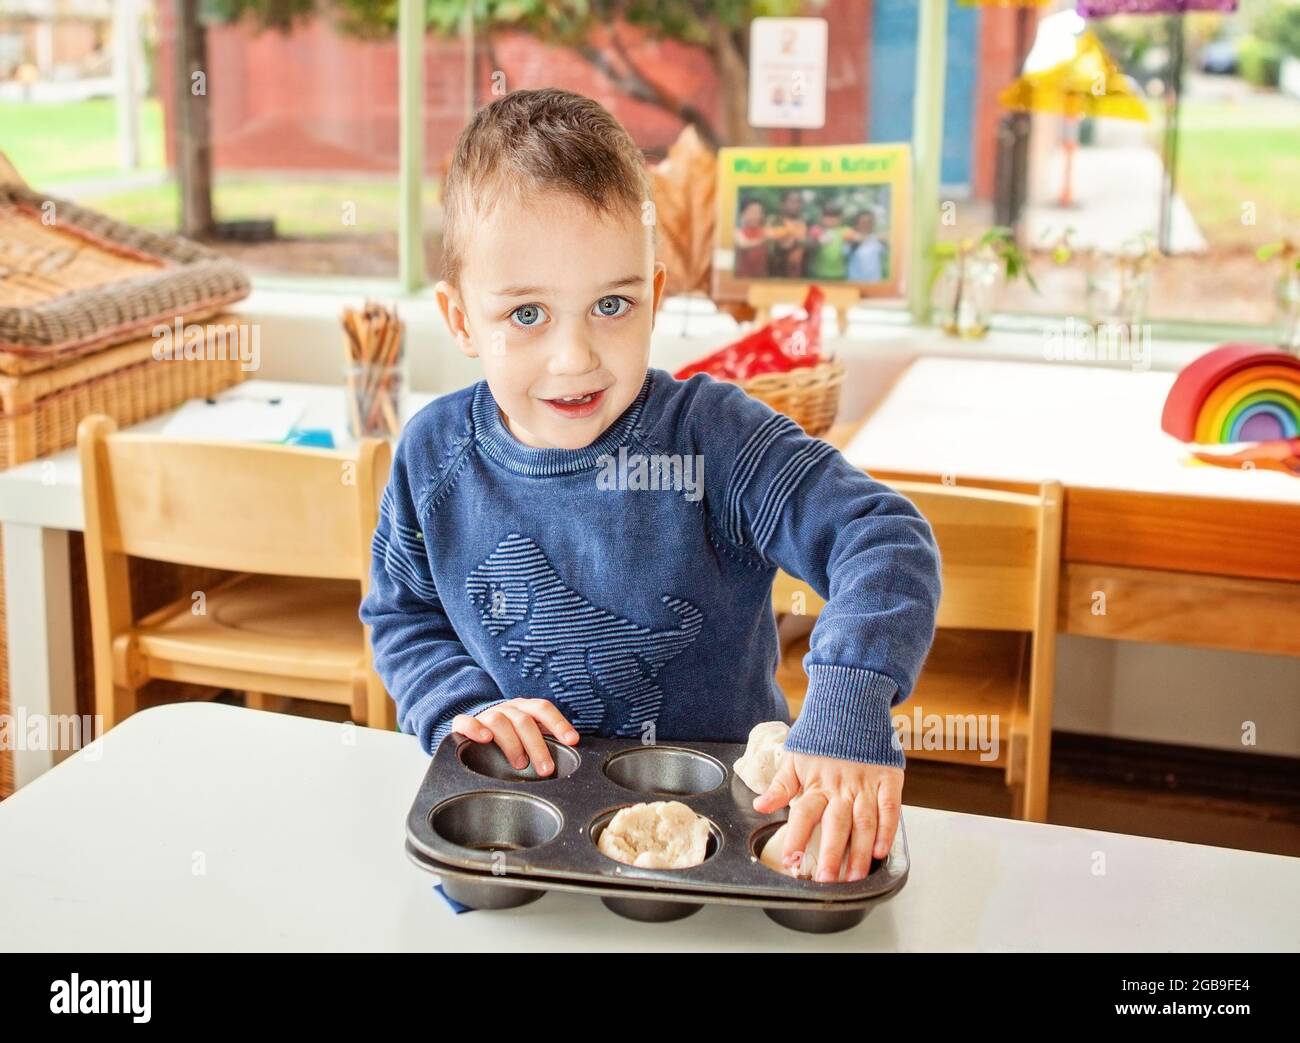 niño pequeño fingiendo cocinar pastelitos Foto de stock